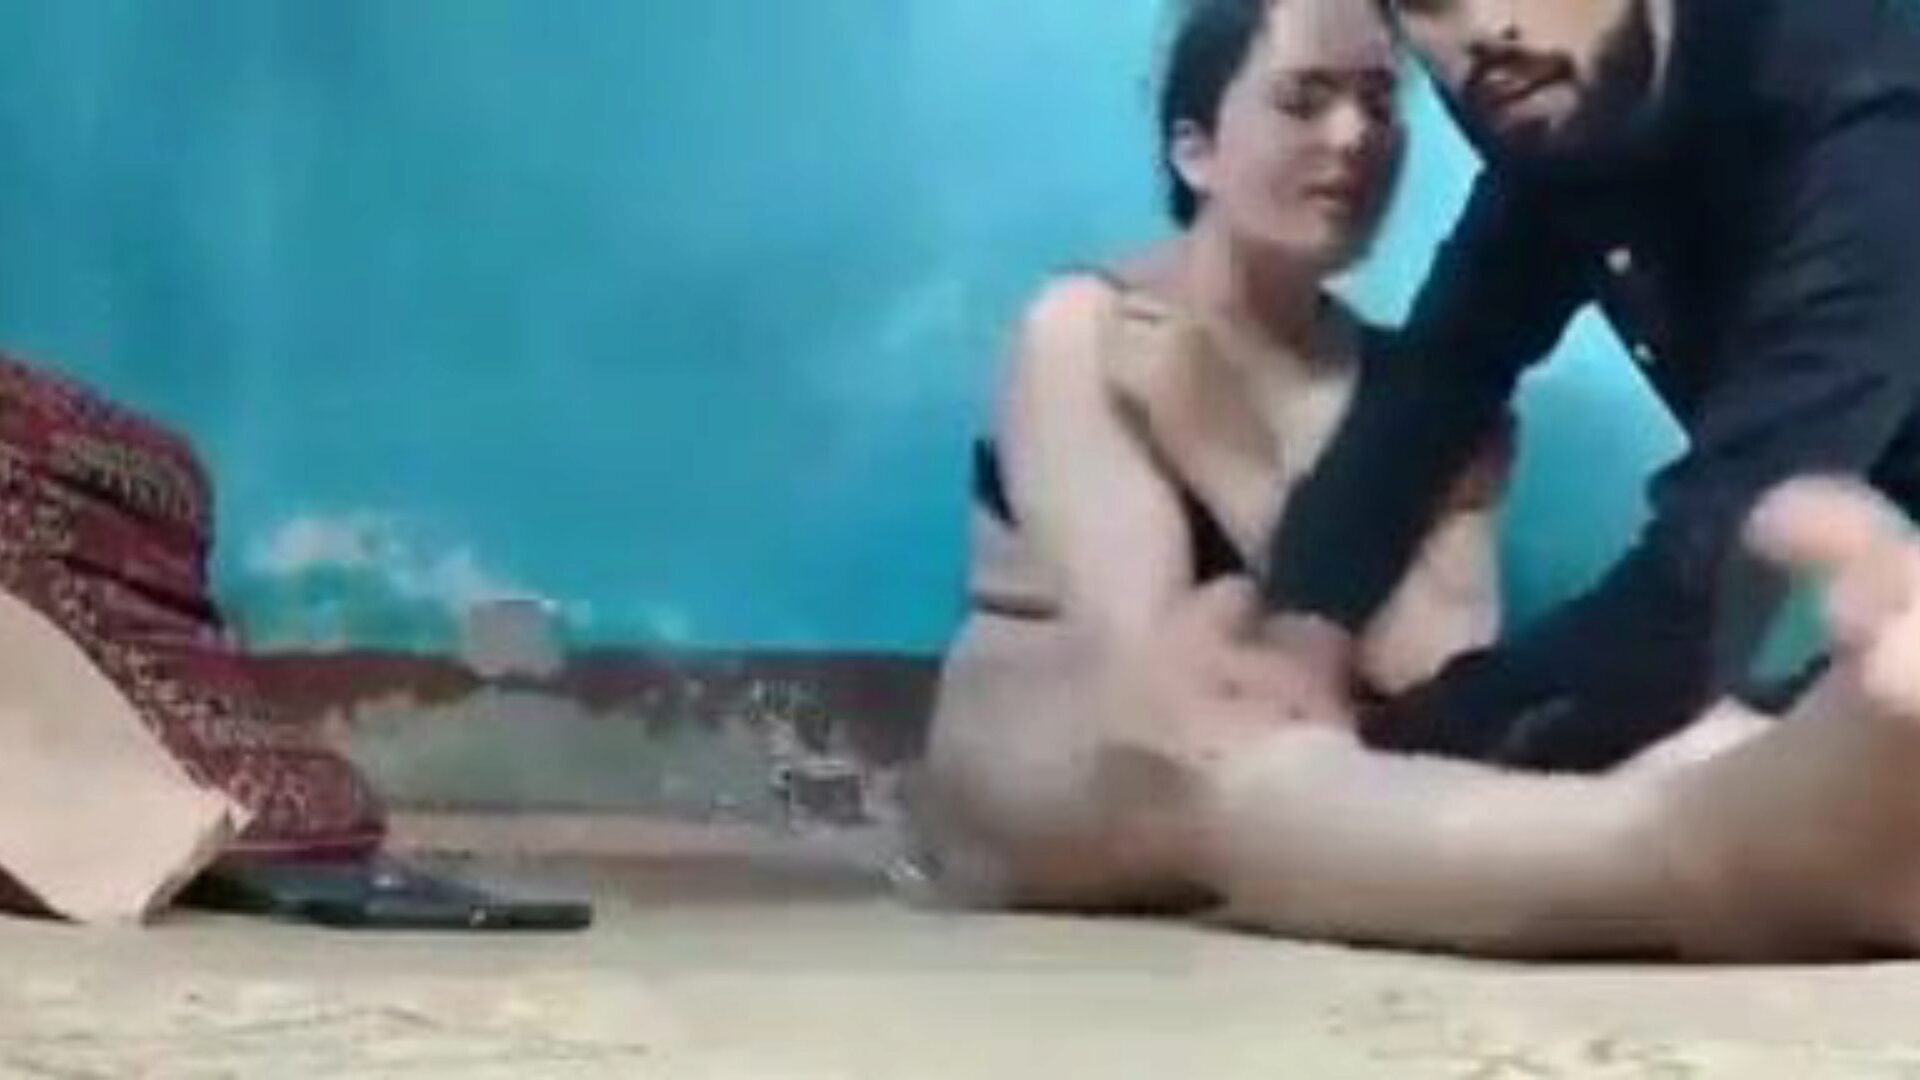 Кашмира секс видео: бесплатно индийское порно видео 69 - xhamster смотреть Кашмир секс видео трубка взрывы выхода видео бесплатно на xhamster для, с коллекцией самой сексуальной индийскими ххми бесплатно сексом и сюжетные порно эпизода сцены